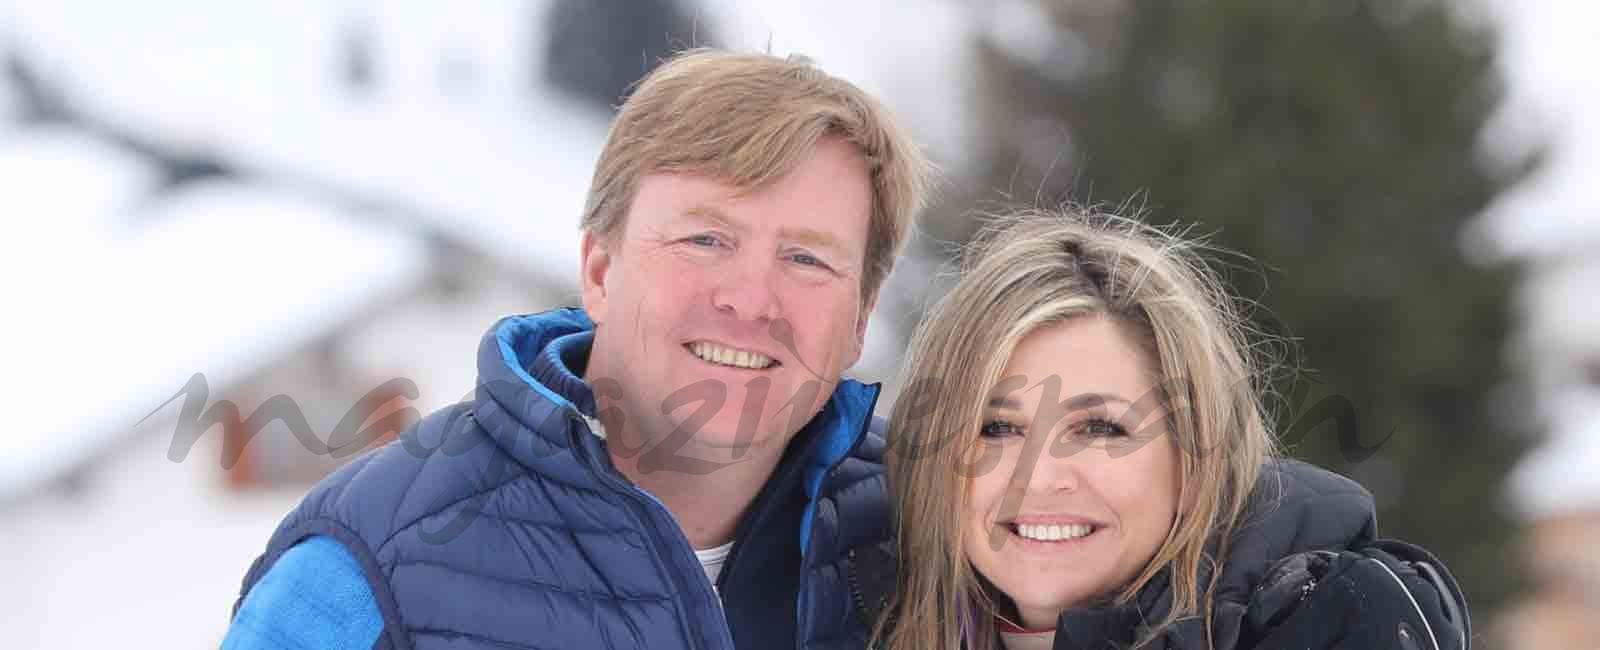 Máxima y Guillermo de Holanda, vacaciones en la nieve con sus hijas